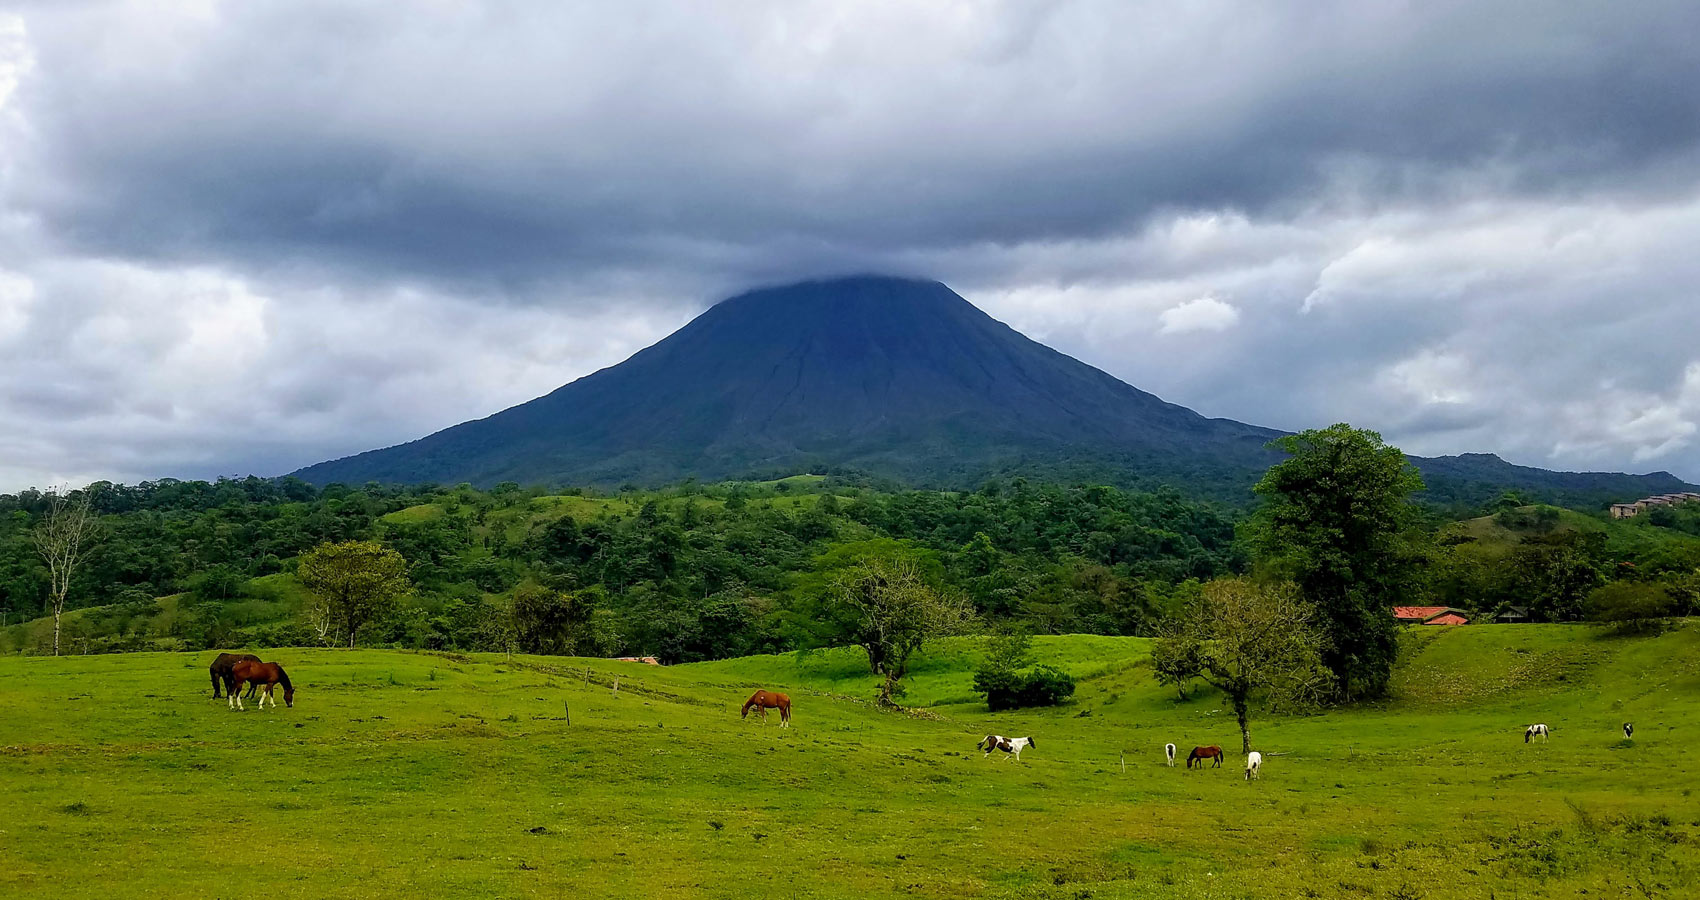 Costa Rica, a travelogue written by Benn Bell at Spillwords.com